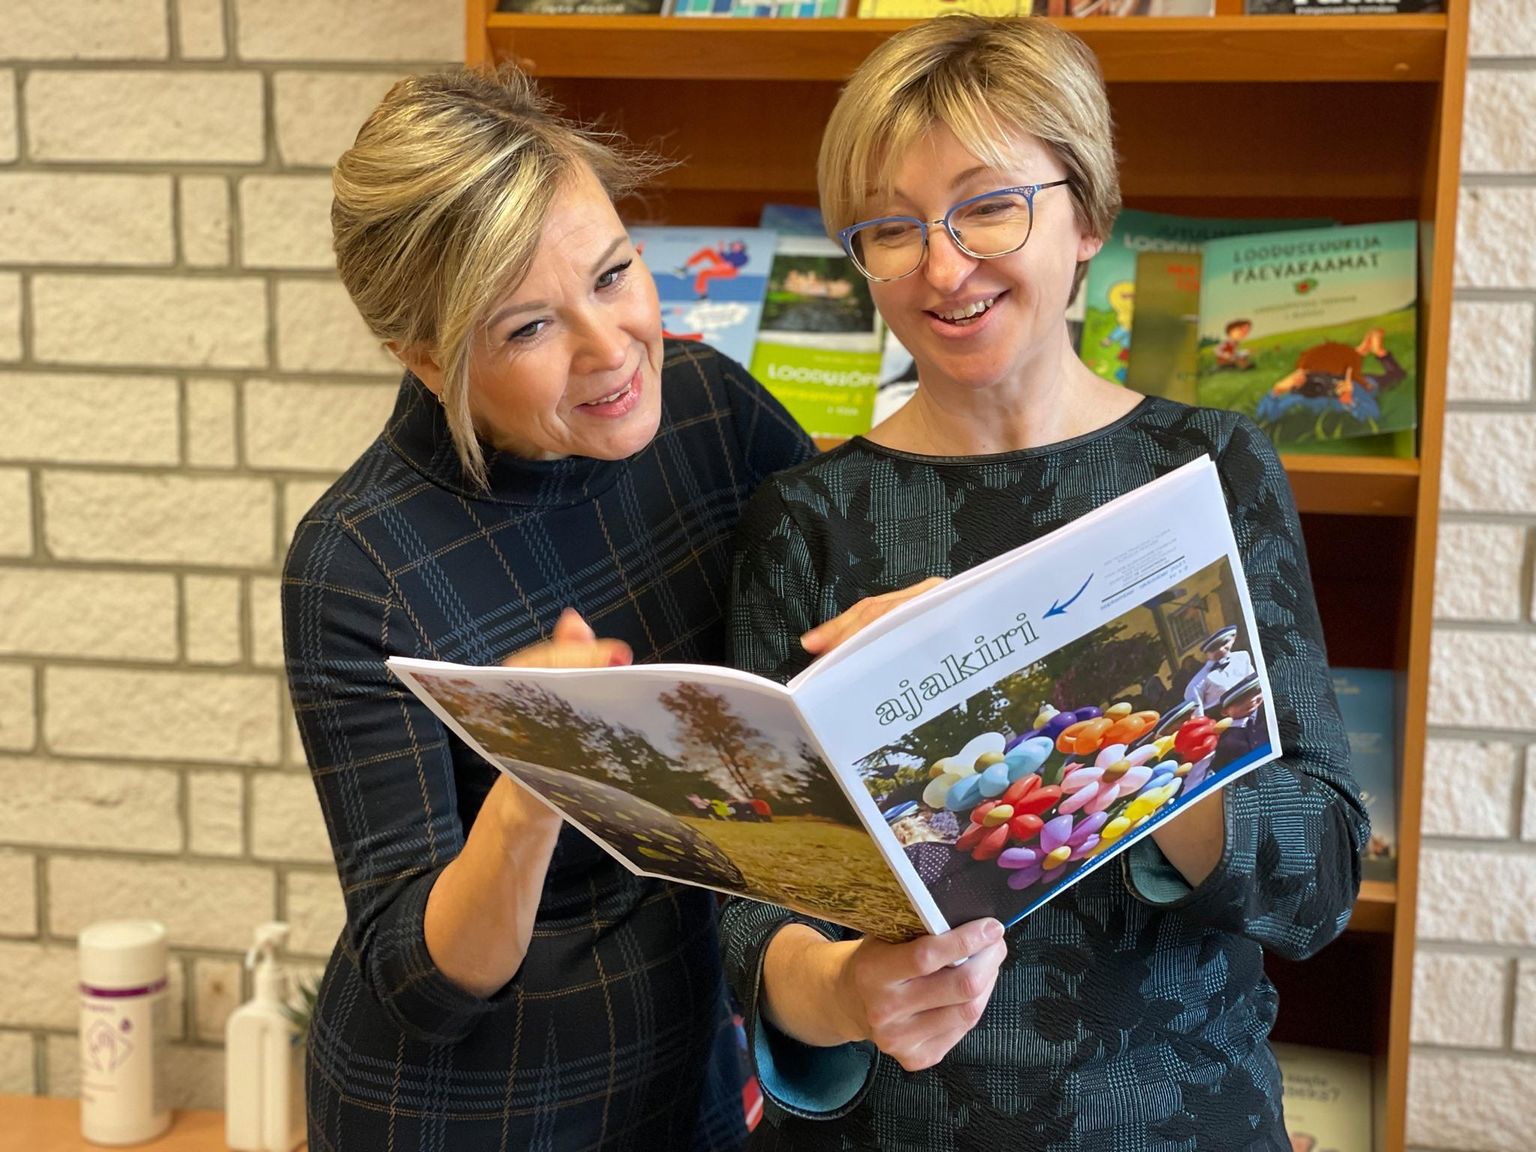 TULEMUS KÄES: Hariduse kooli ajakirja panevad koolipere abiga kokku õpetajad Janne Nurmik (vasakul) ja Merle Lepik.